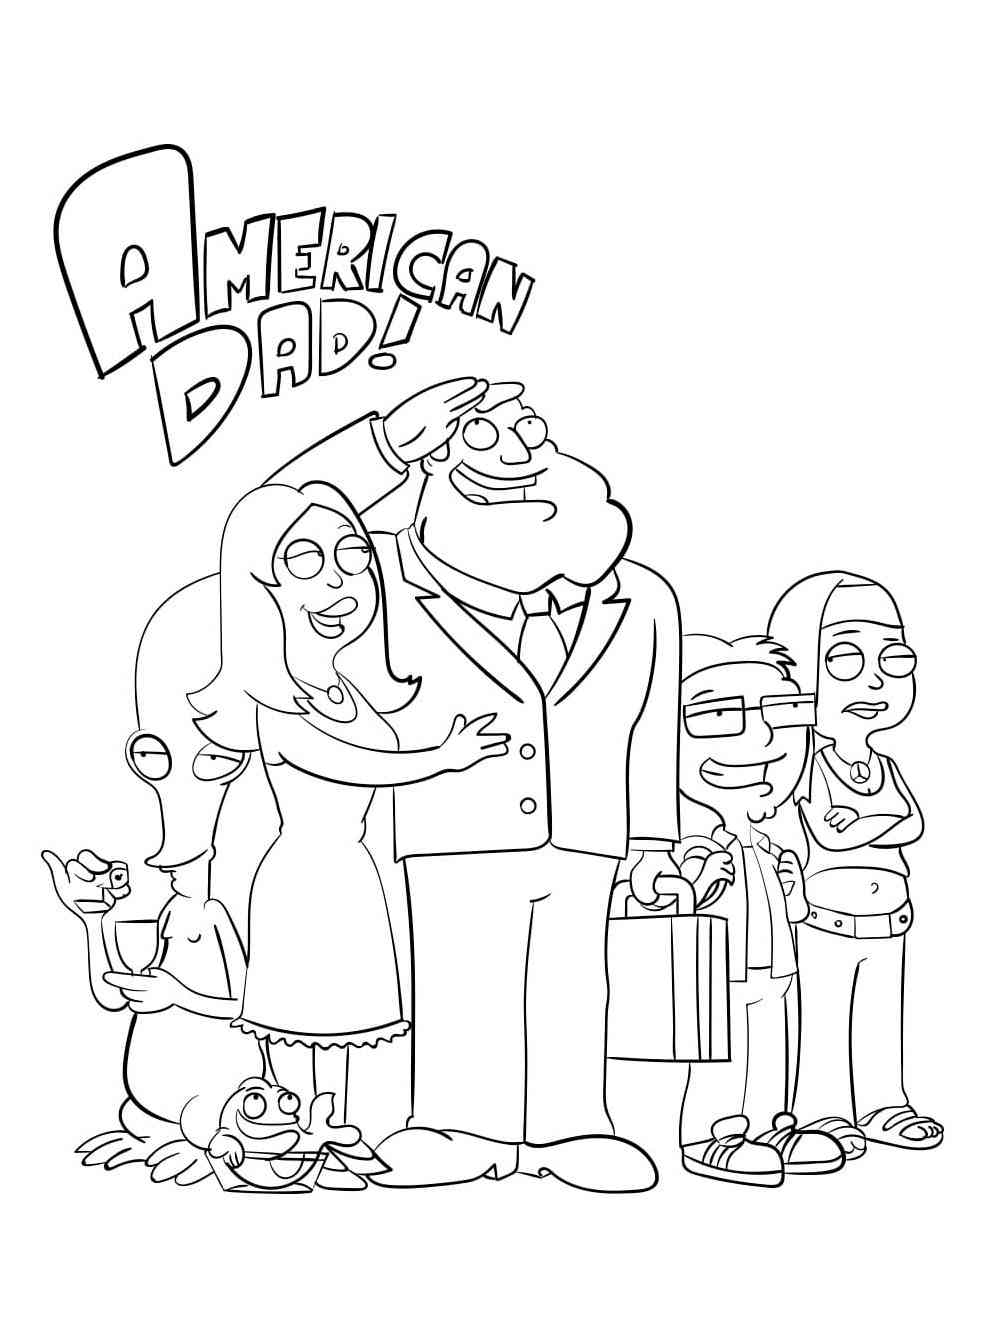 Cartoon American Dad coloring page